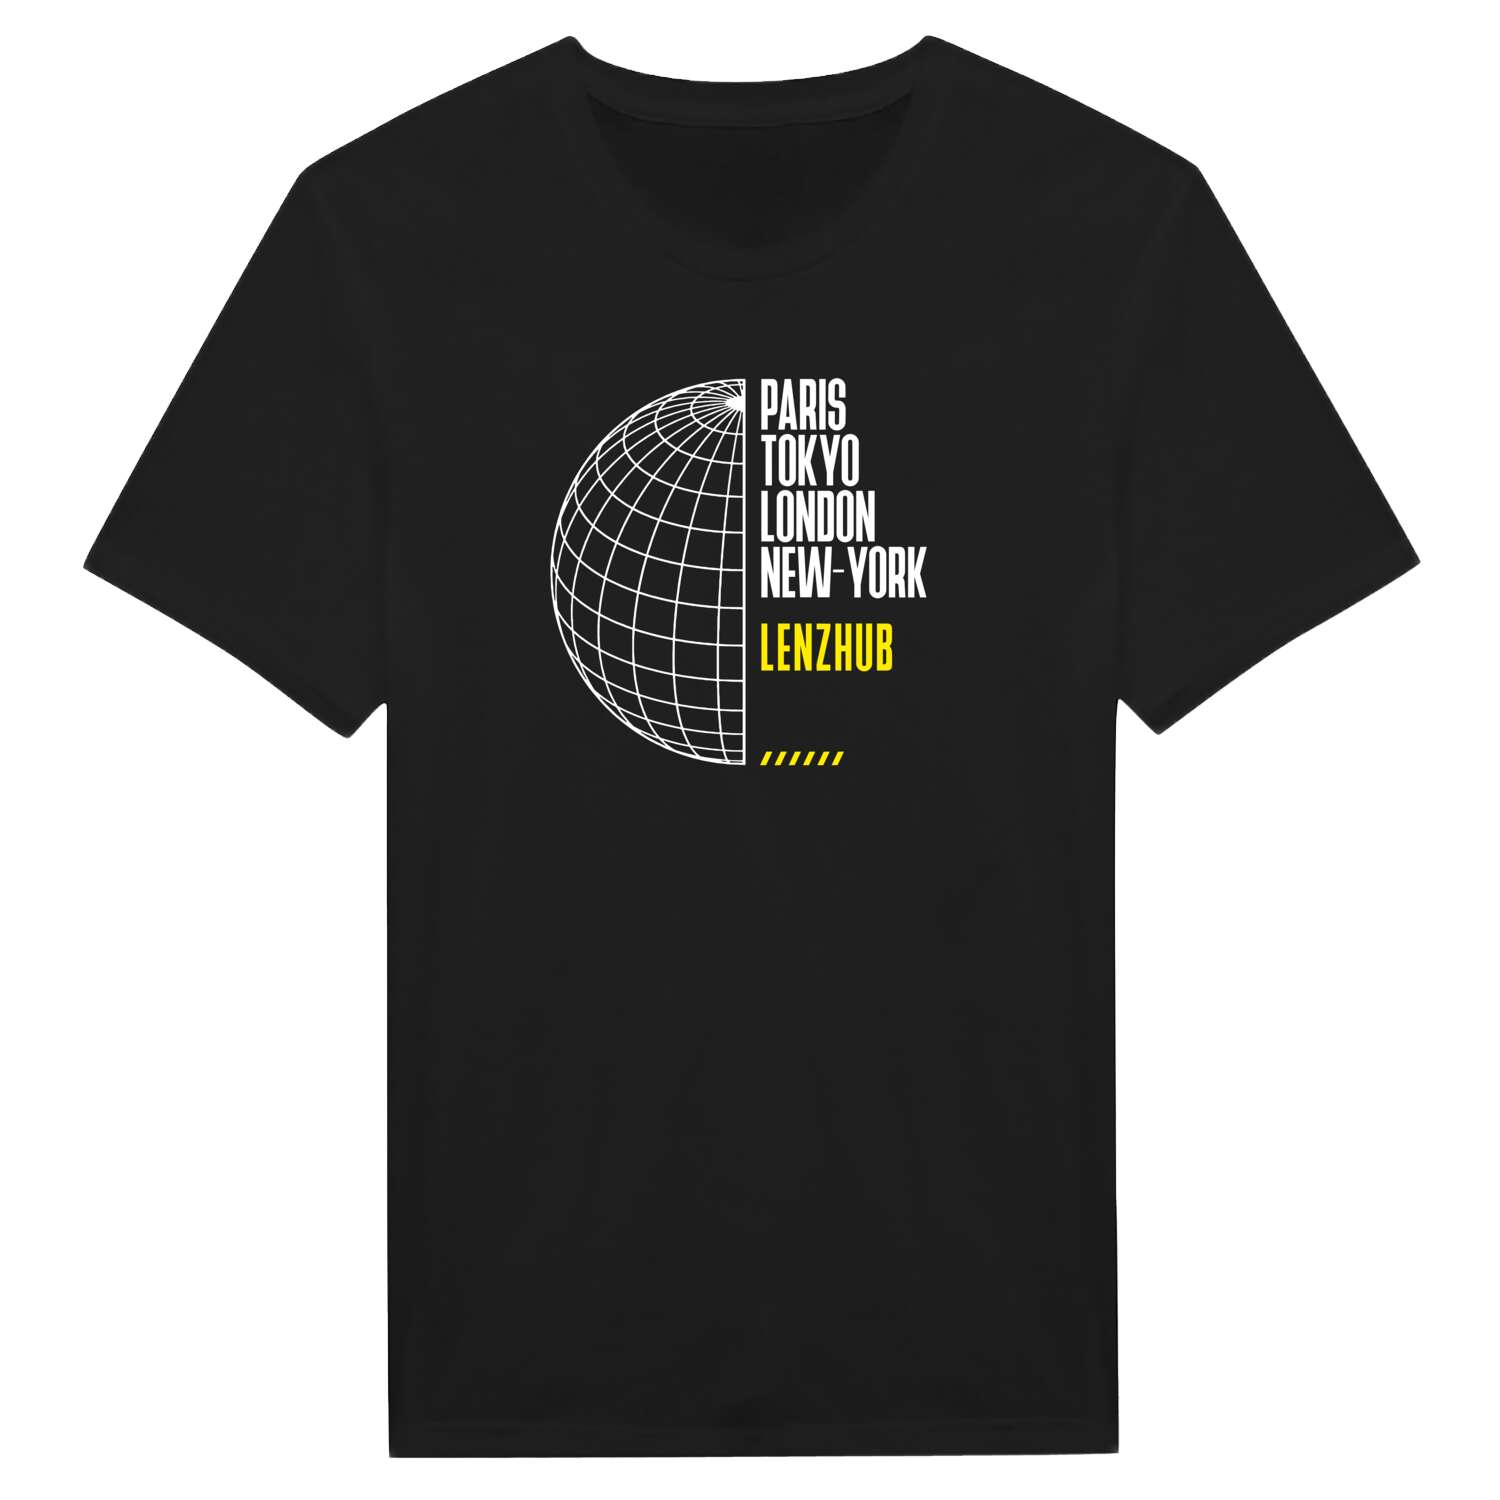 Lenzhub T-Shirt »Paris Tokyo London«